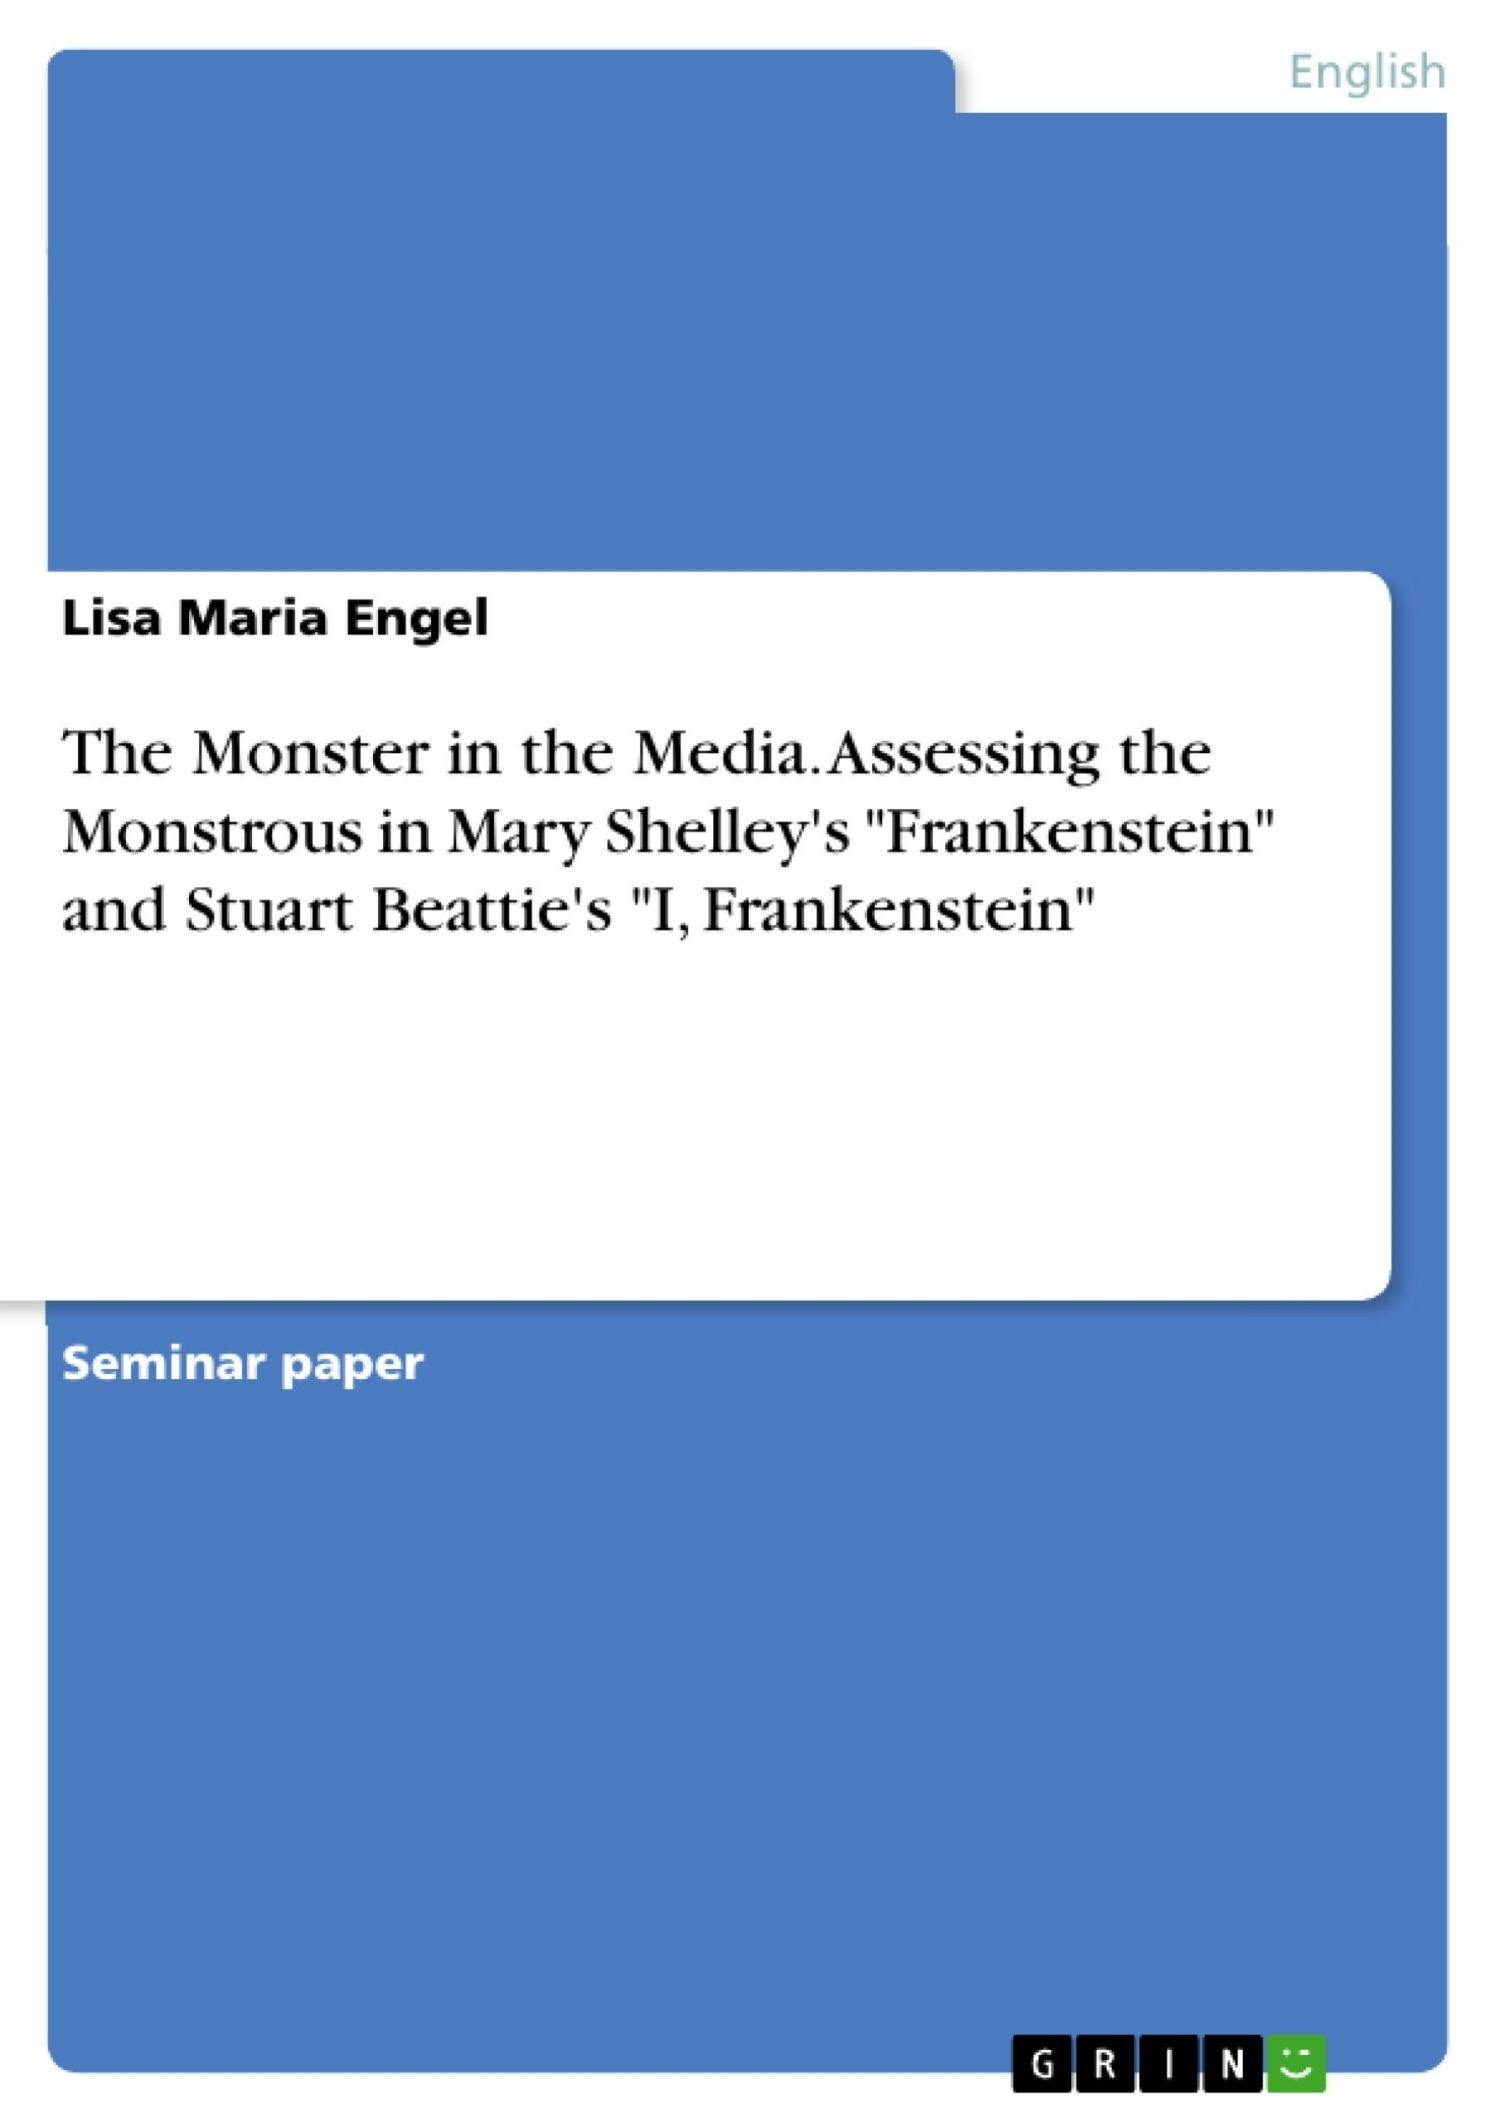 The Monster in the Media. Assessing the Monstrous in Mary Shelley's 'Frankenstein' and Stuart Beattie's 'I, Frankenstein'